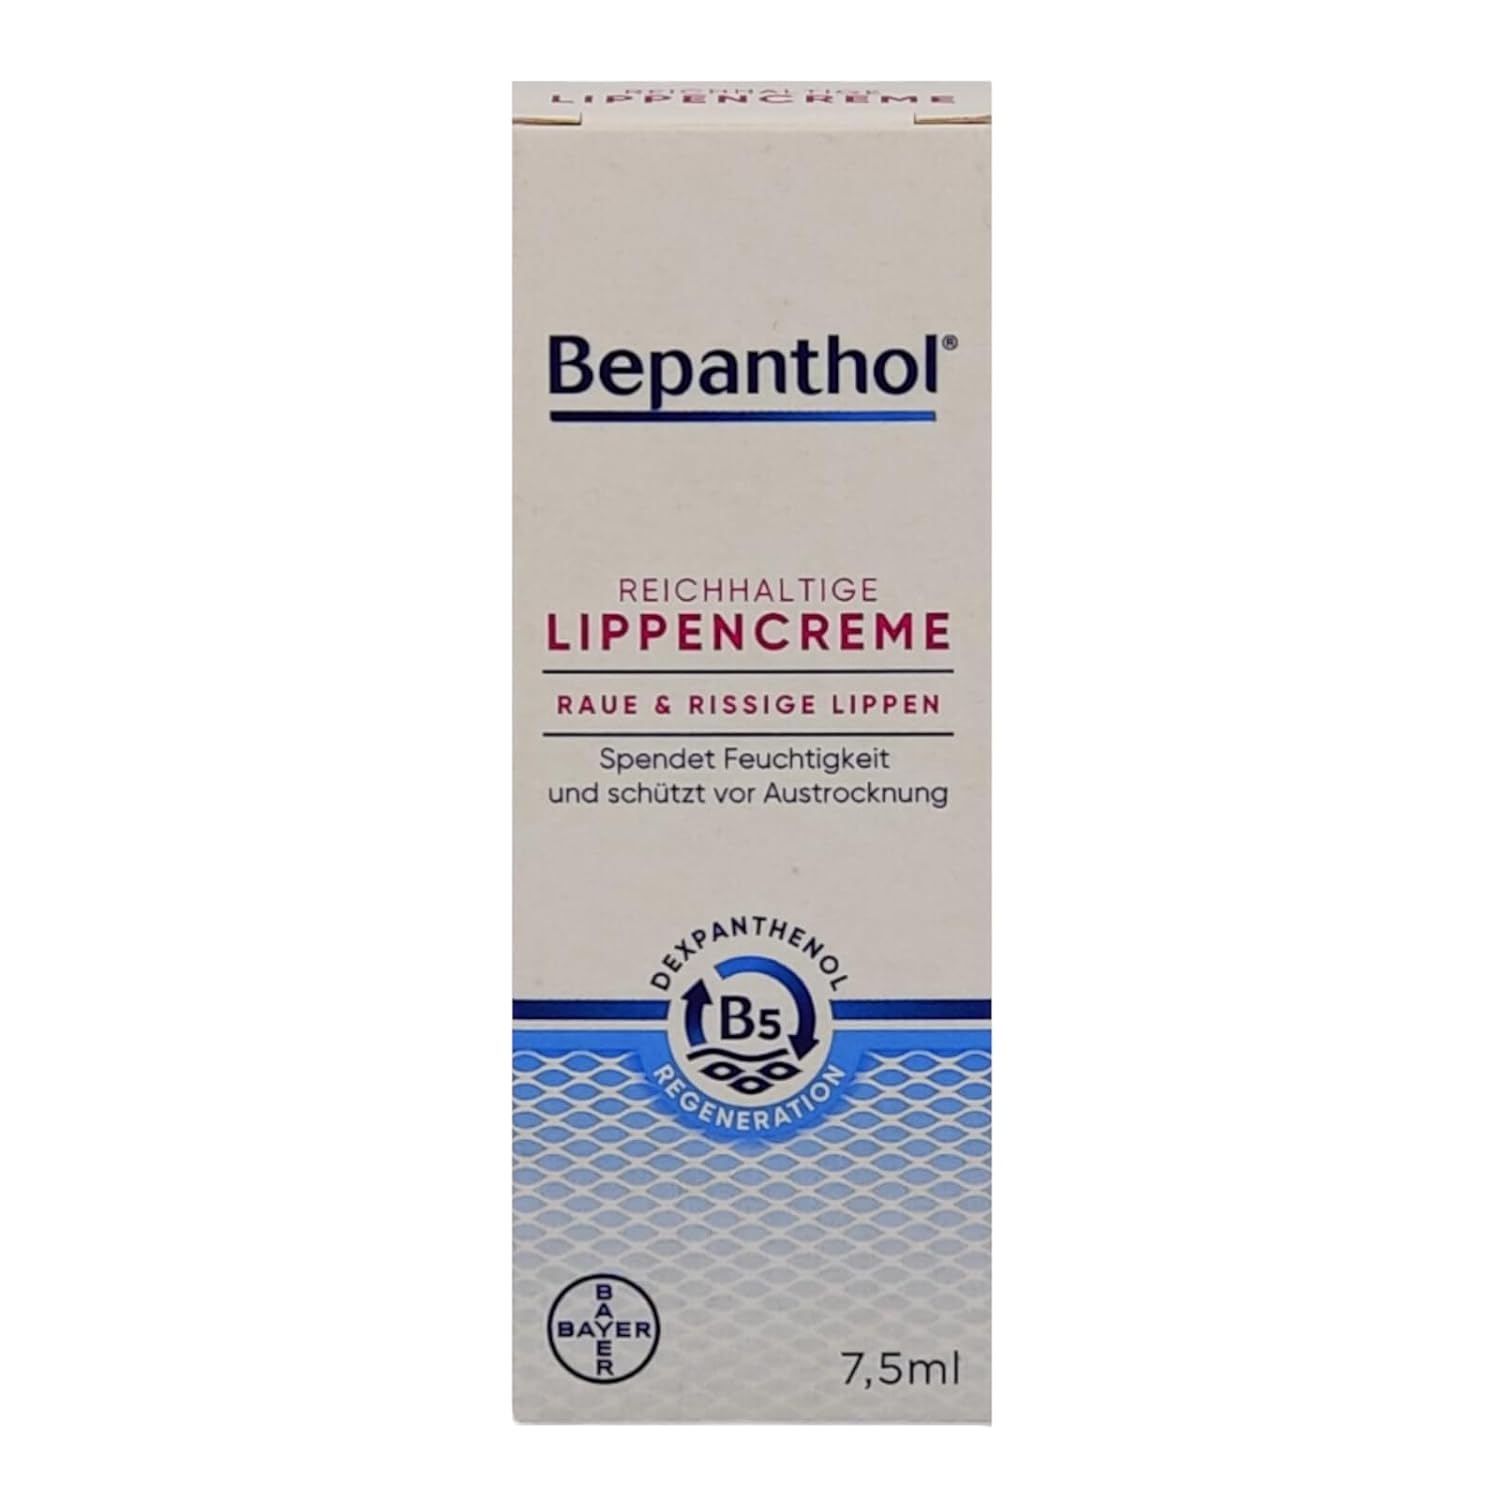 Bepanthol Rich Lip Cream 7.5 ML I for Rough, Cracked, Brittle, Dry Lips I for Regeneration of Lip Skin I Dexpanthenol I Economy Set Plus Pharma Perle Giveaway (1 x 7.5 ml)